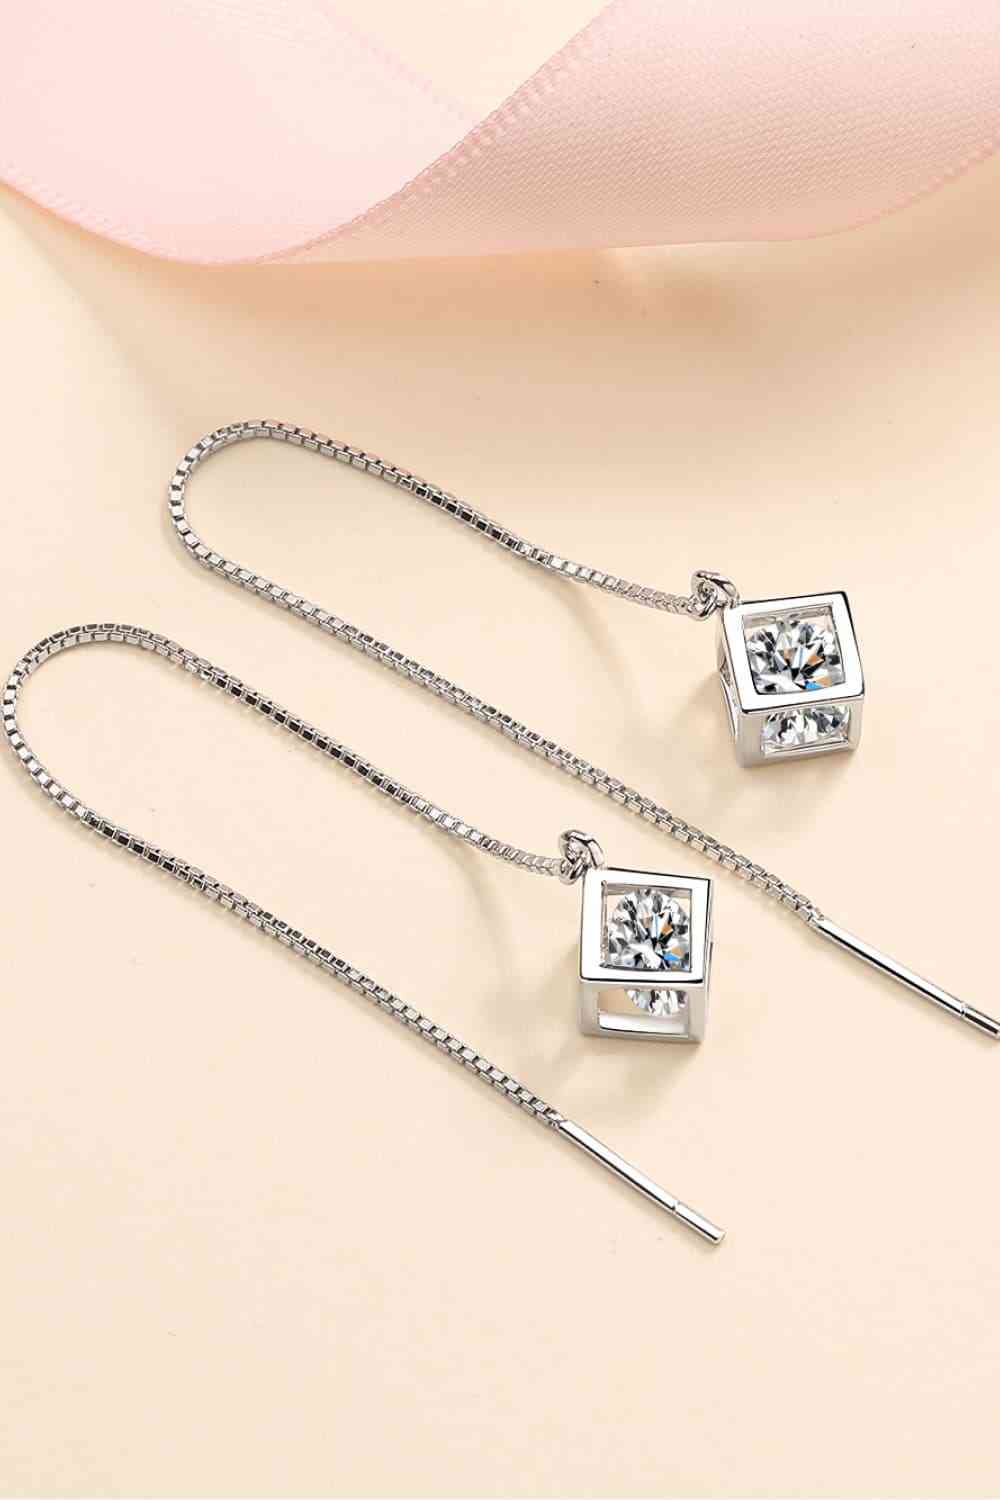 2 Carat Moissanite 925 Sterling Silver Threader Earrings - Tophatter Shopping Deals